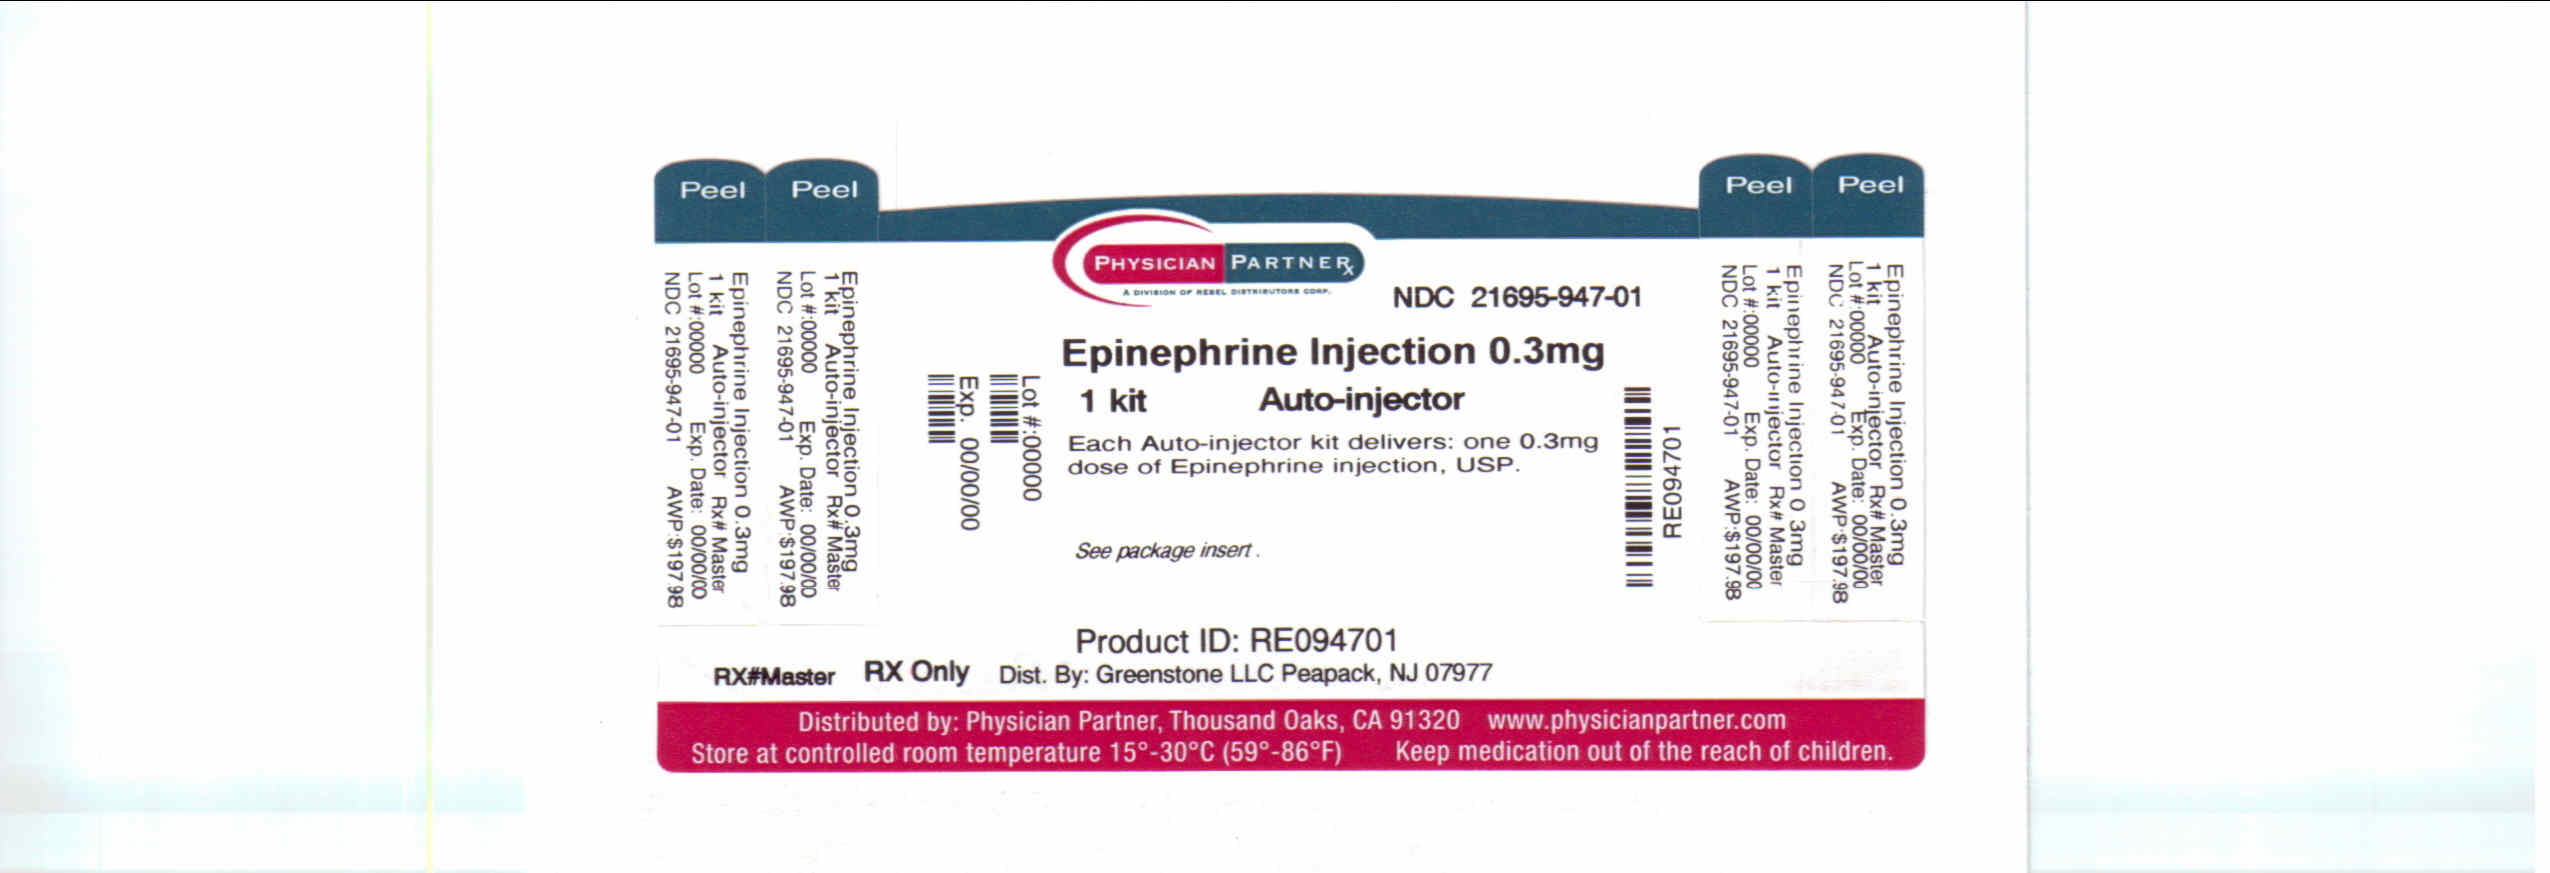 Epinephrine Injection Breastfeeding